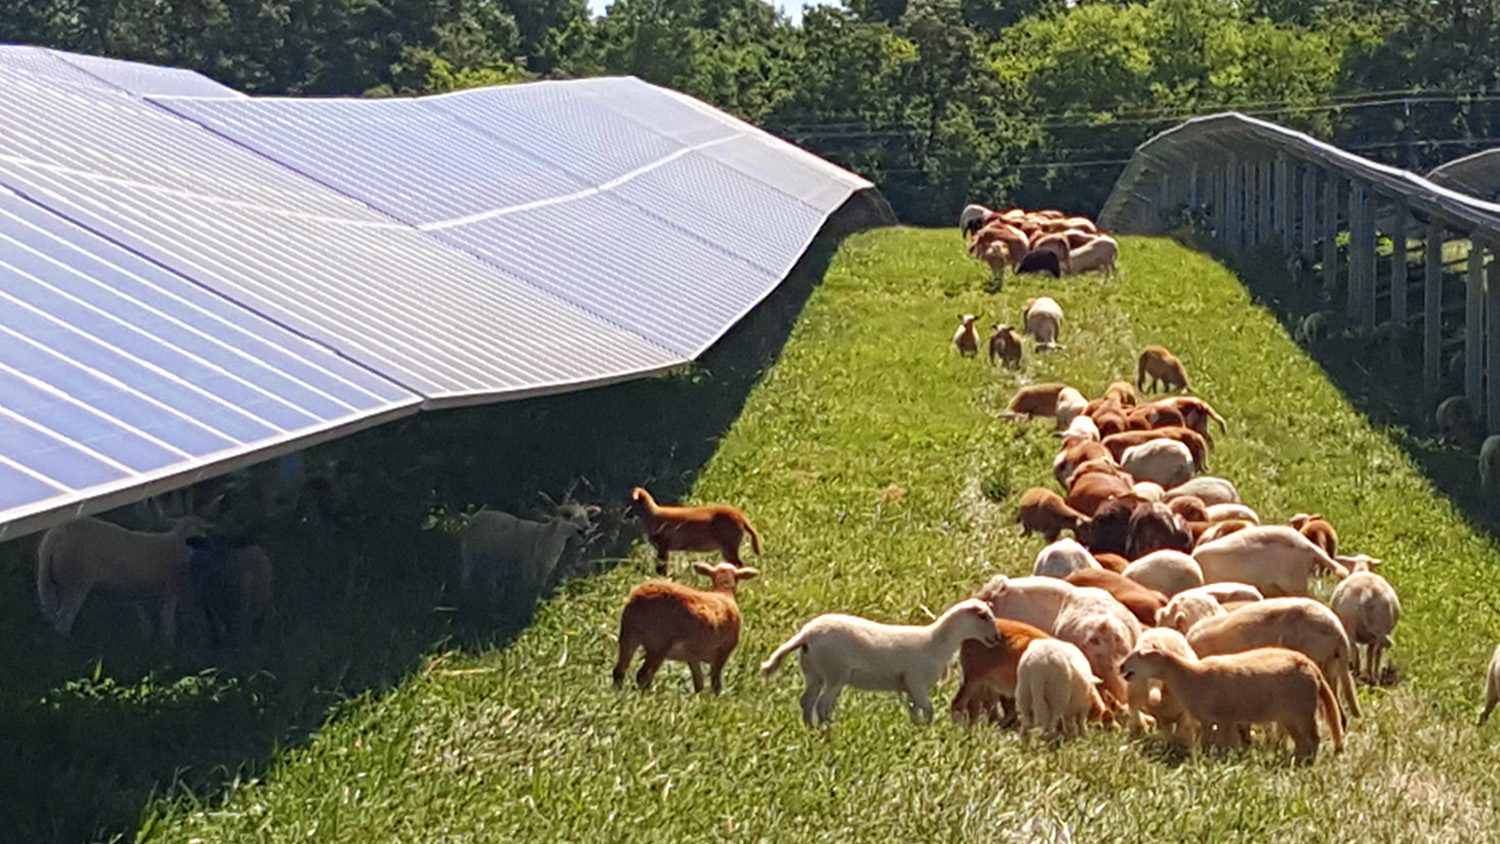 Sheep graze between rows of solar panels.